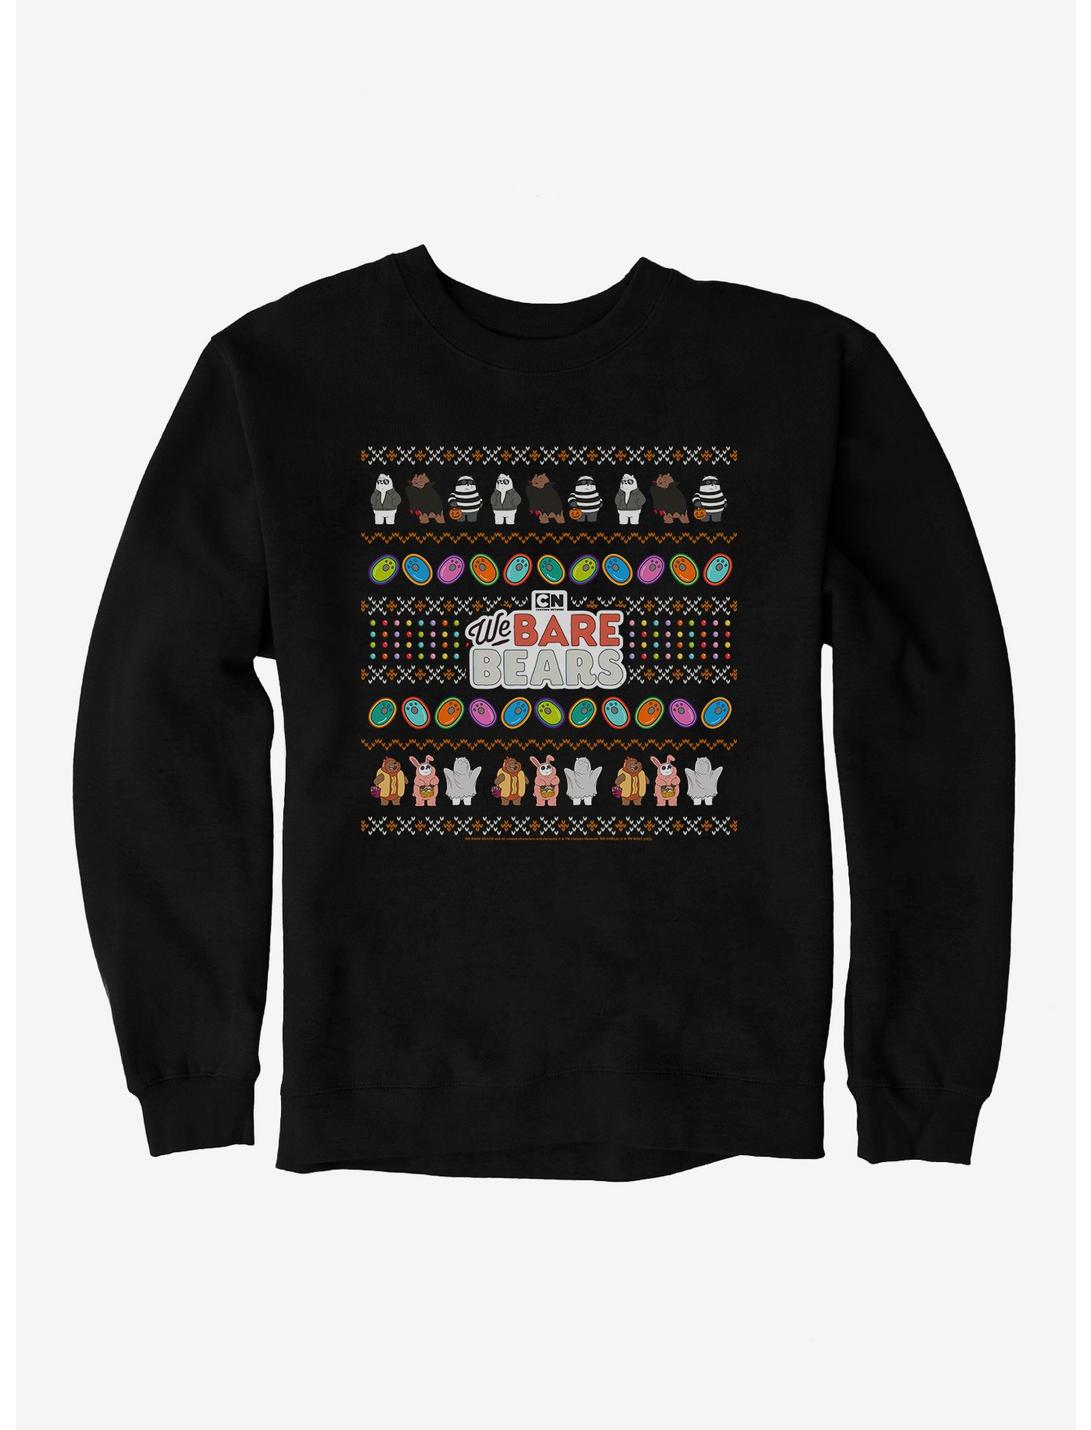 We Bear Bears Halloween Ugly Christmas Pattern Sweatshirt, BLACK, hi-res